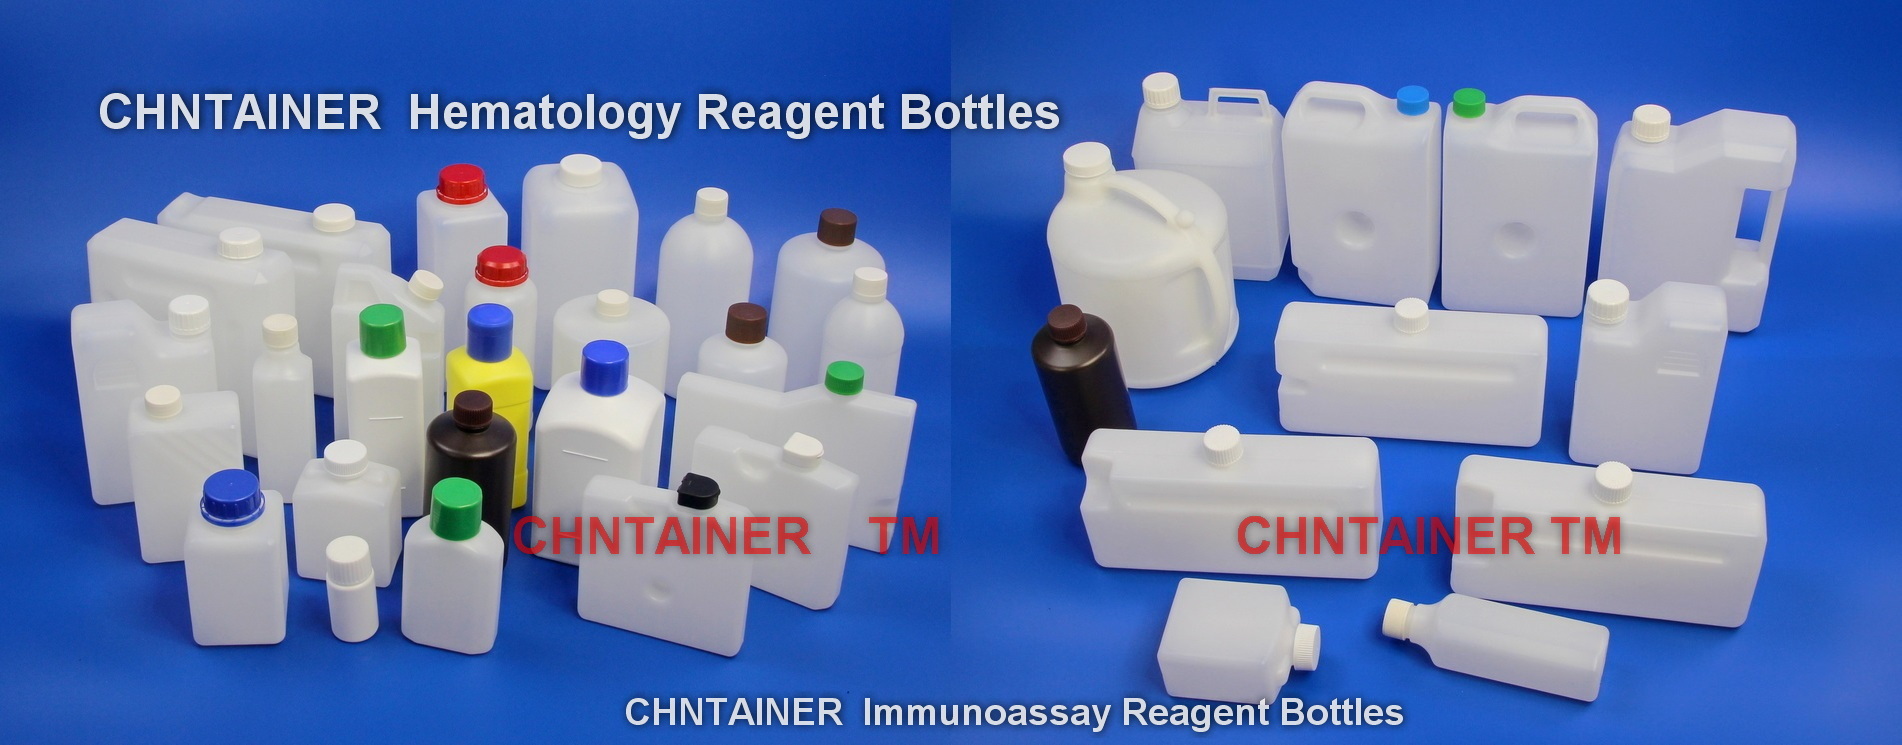 banner_IVD_hematology_Reagent_Bottles_Immunoassay_reagent_bottles_chntainer_CFDPLAS_002